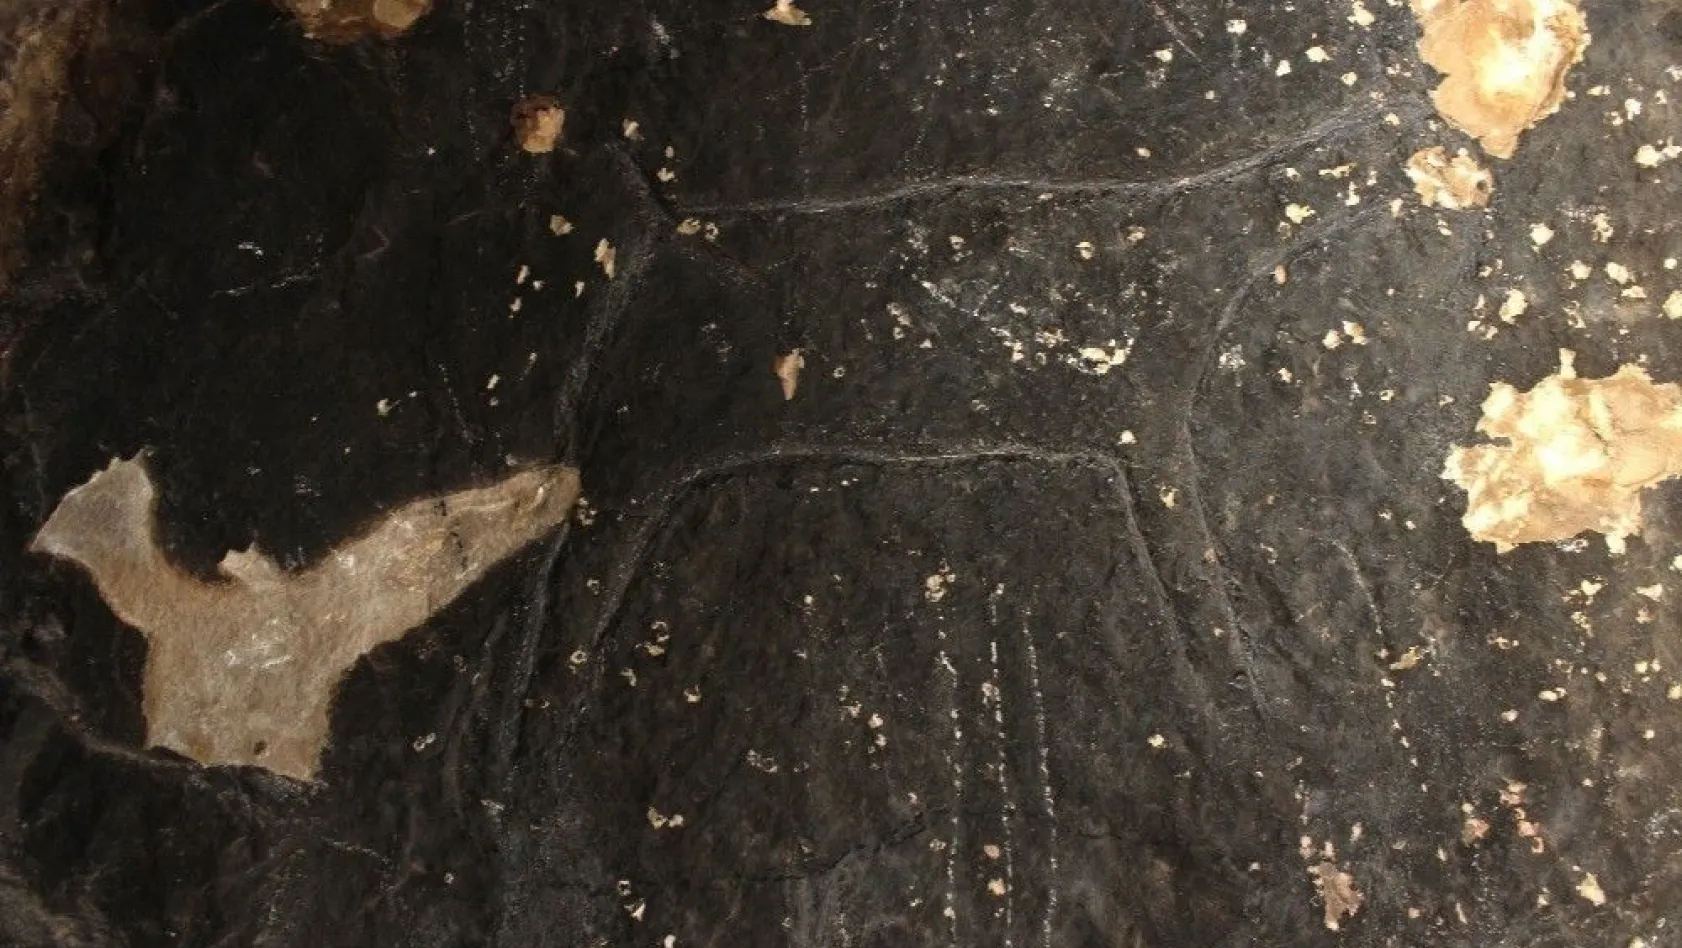 Taş devri insanları tarafından 42 bin yıl önce çizildi
